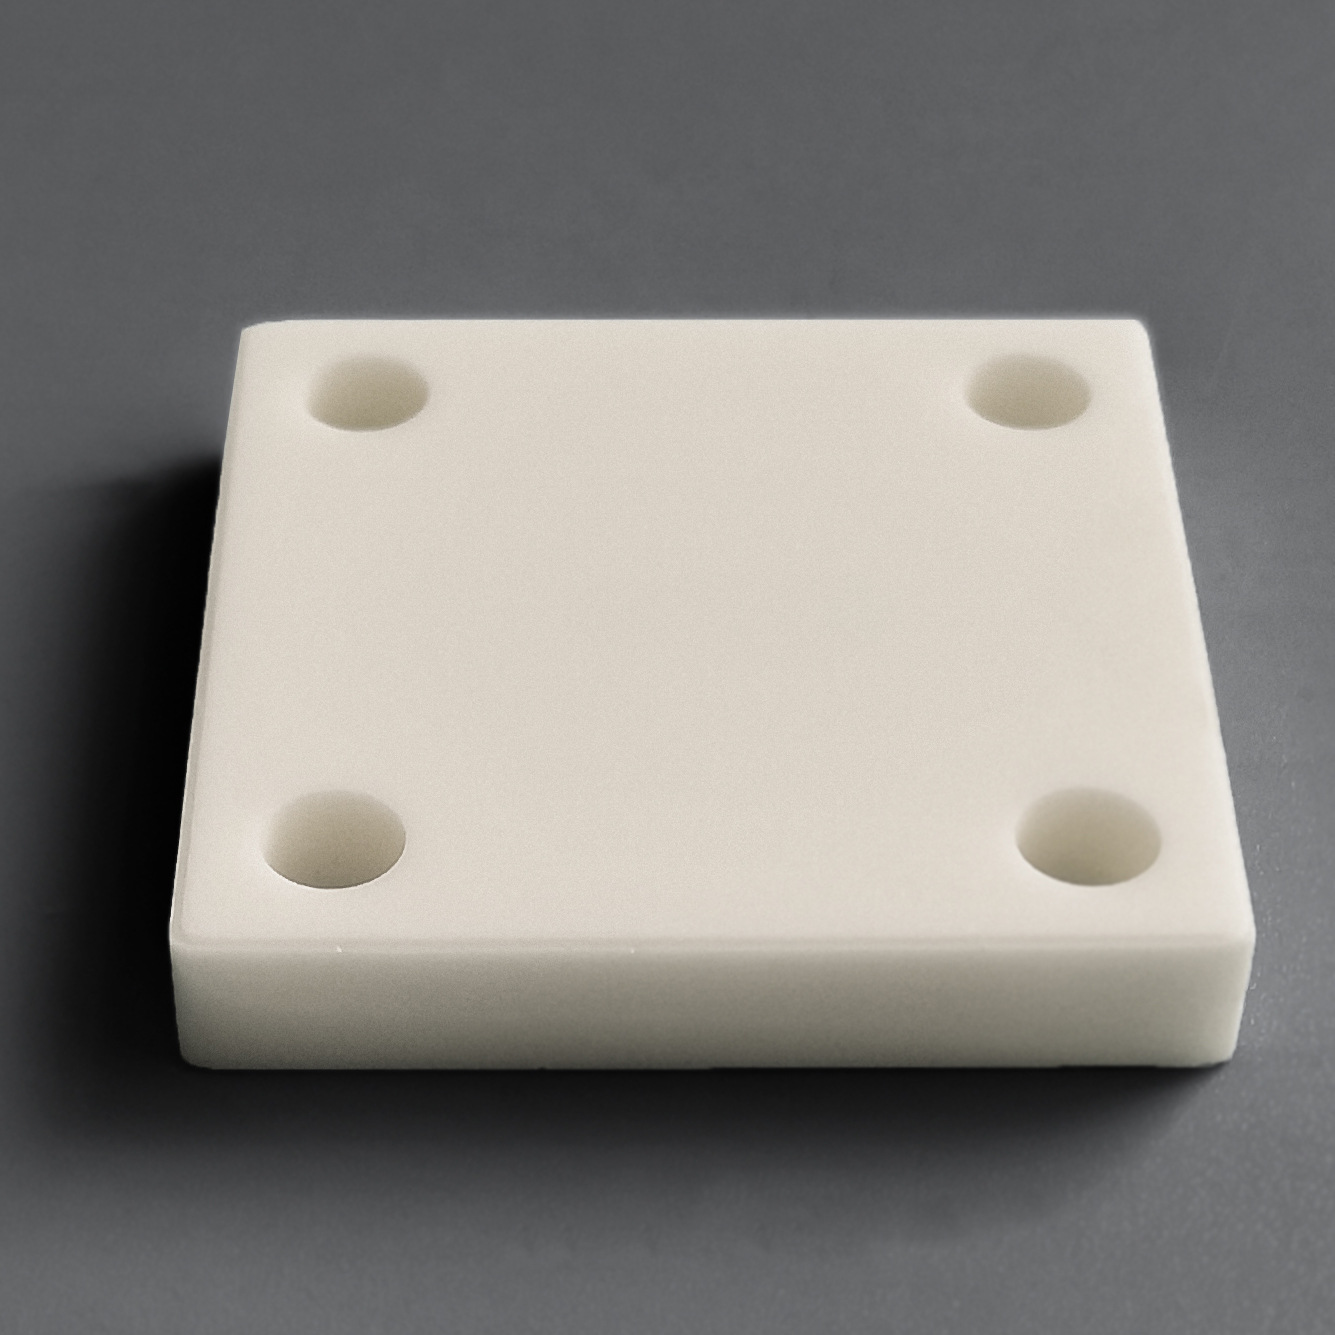 氧化铝陶瓷 PLASMA 陶瓷板36.5×36.5×T6.0 高频绝缘 厦门新瓷